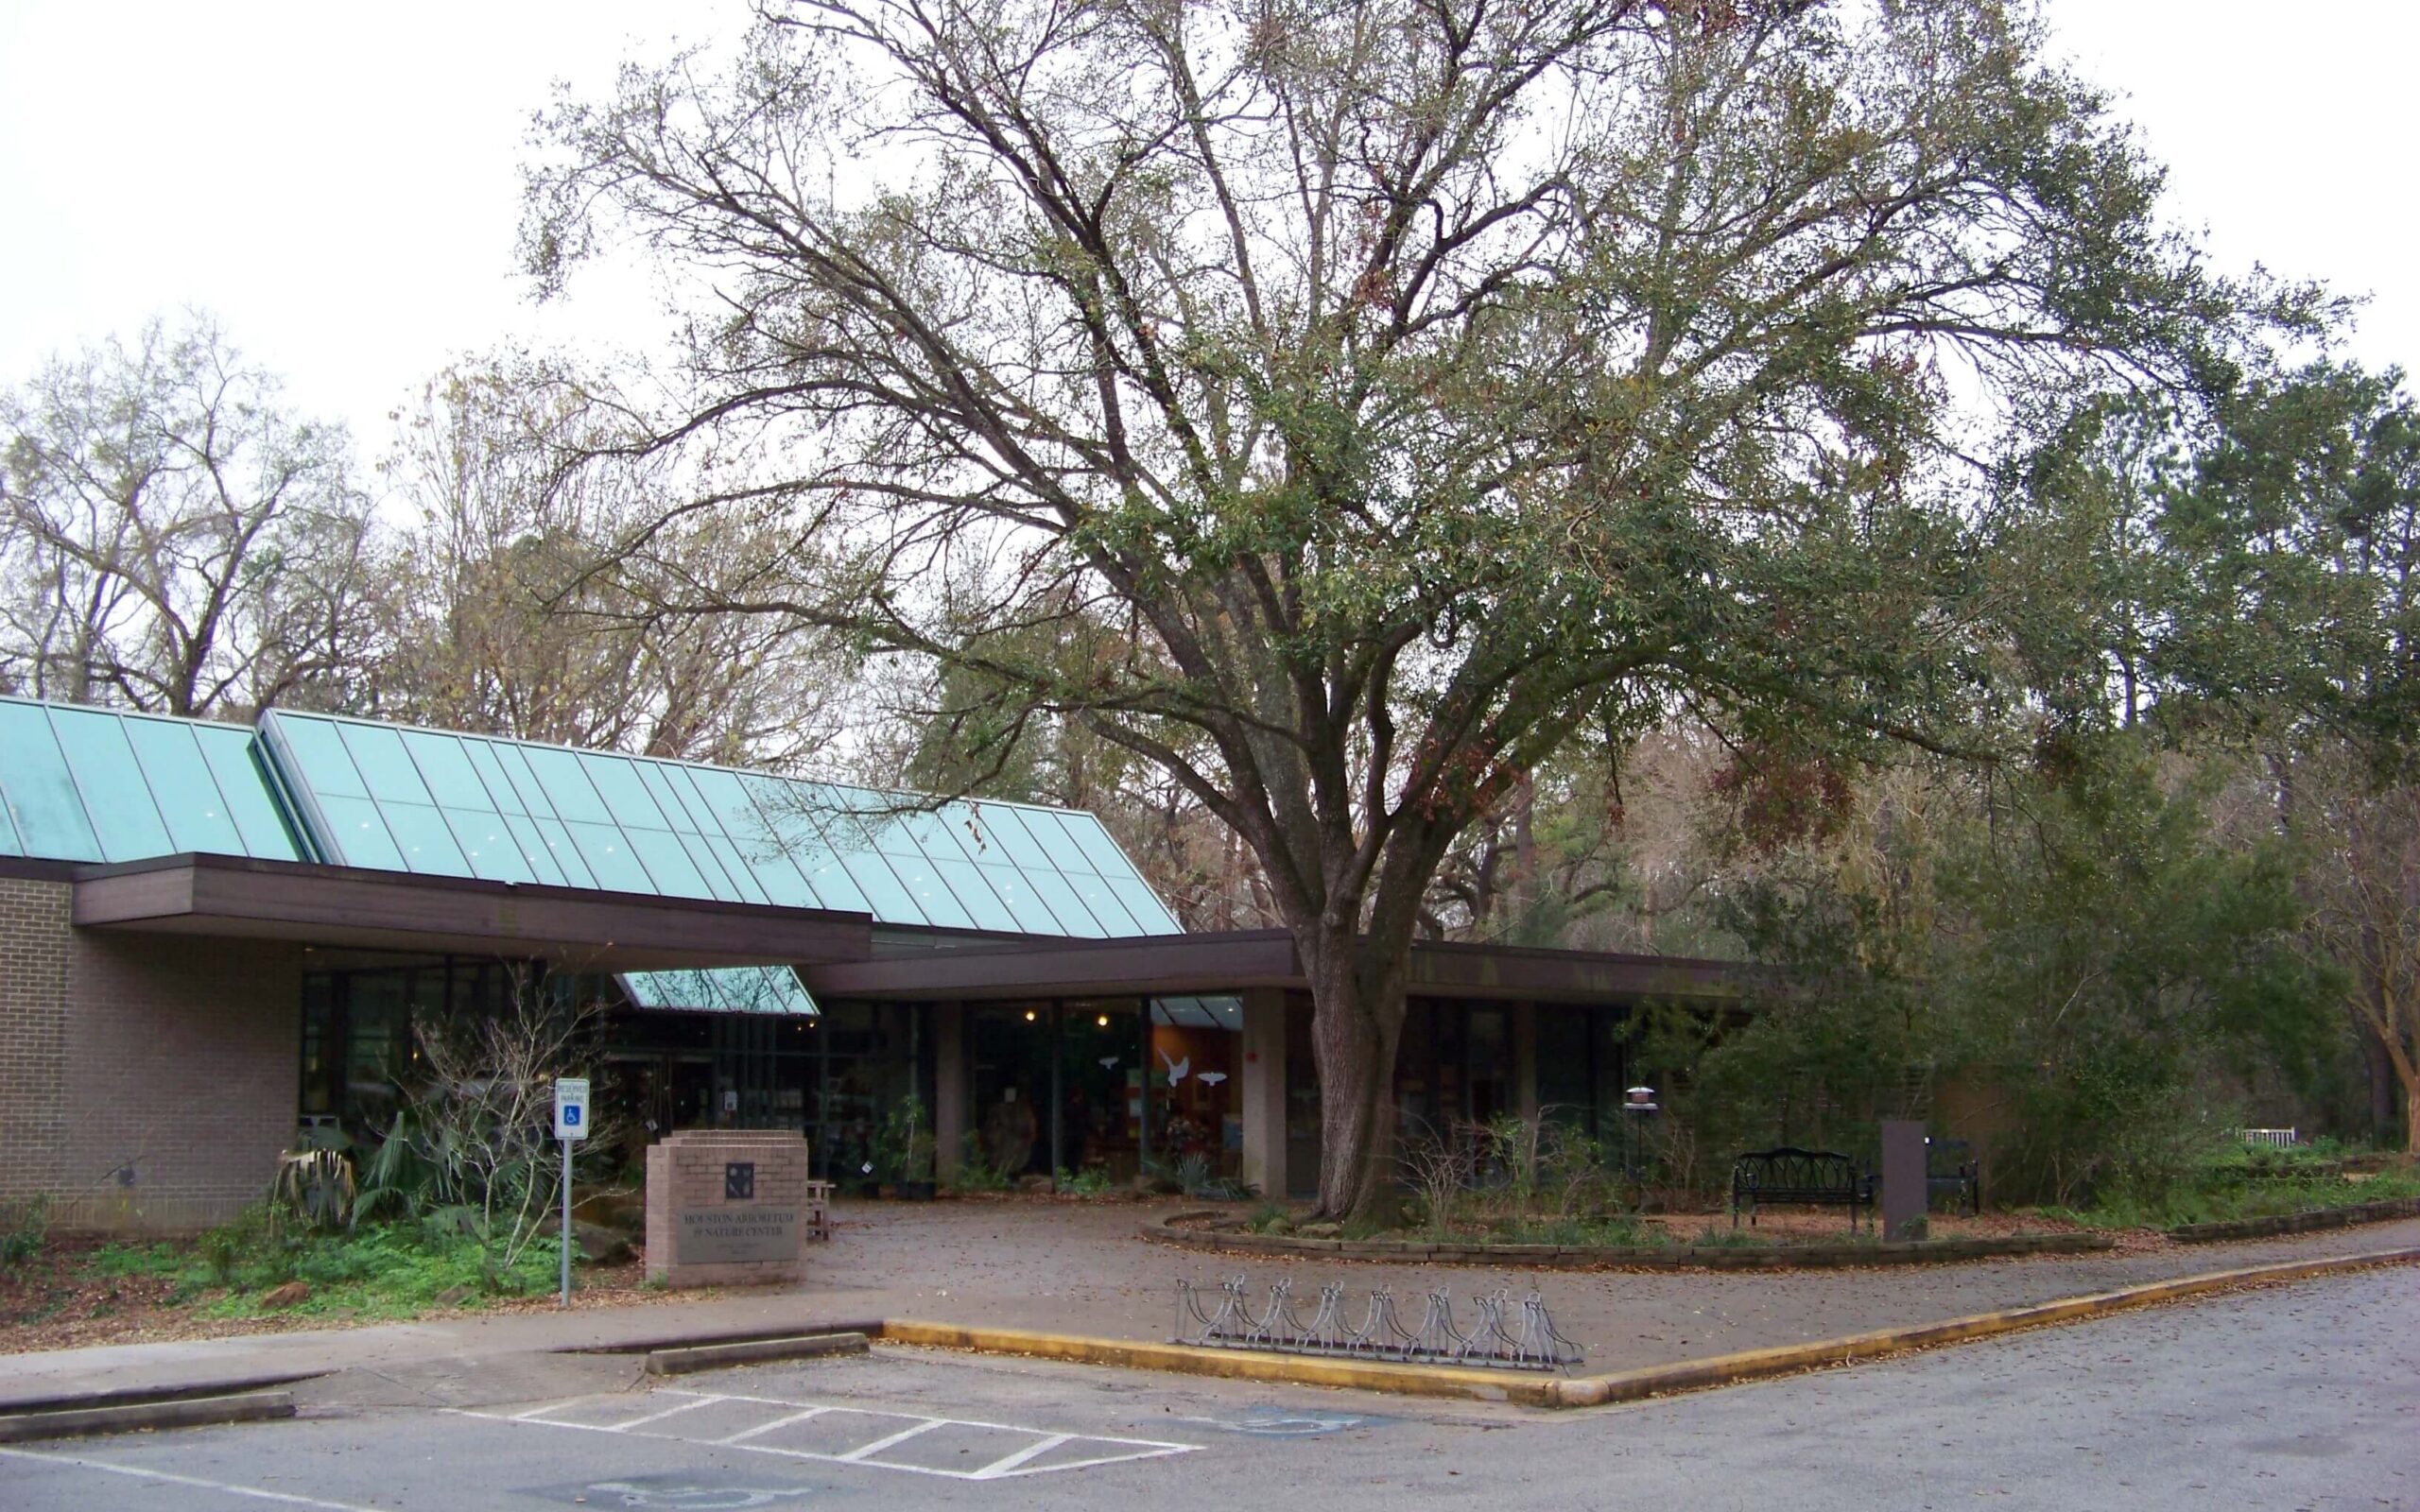 Houston Arboretum and Nature Center / Wikimedia Commons / Idawriter
Links: https://commons.wikimedia.org/wiki/File:Houston_Arboretum_and_Nature_Center_-_panoramio.jpg